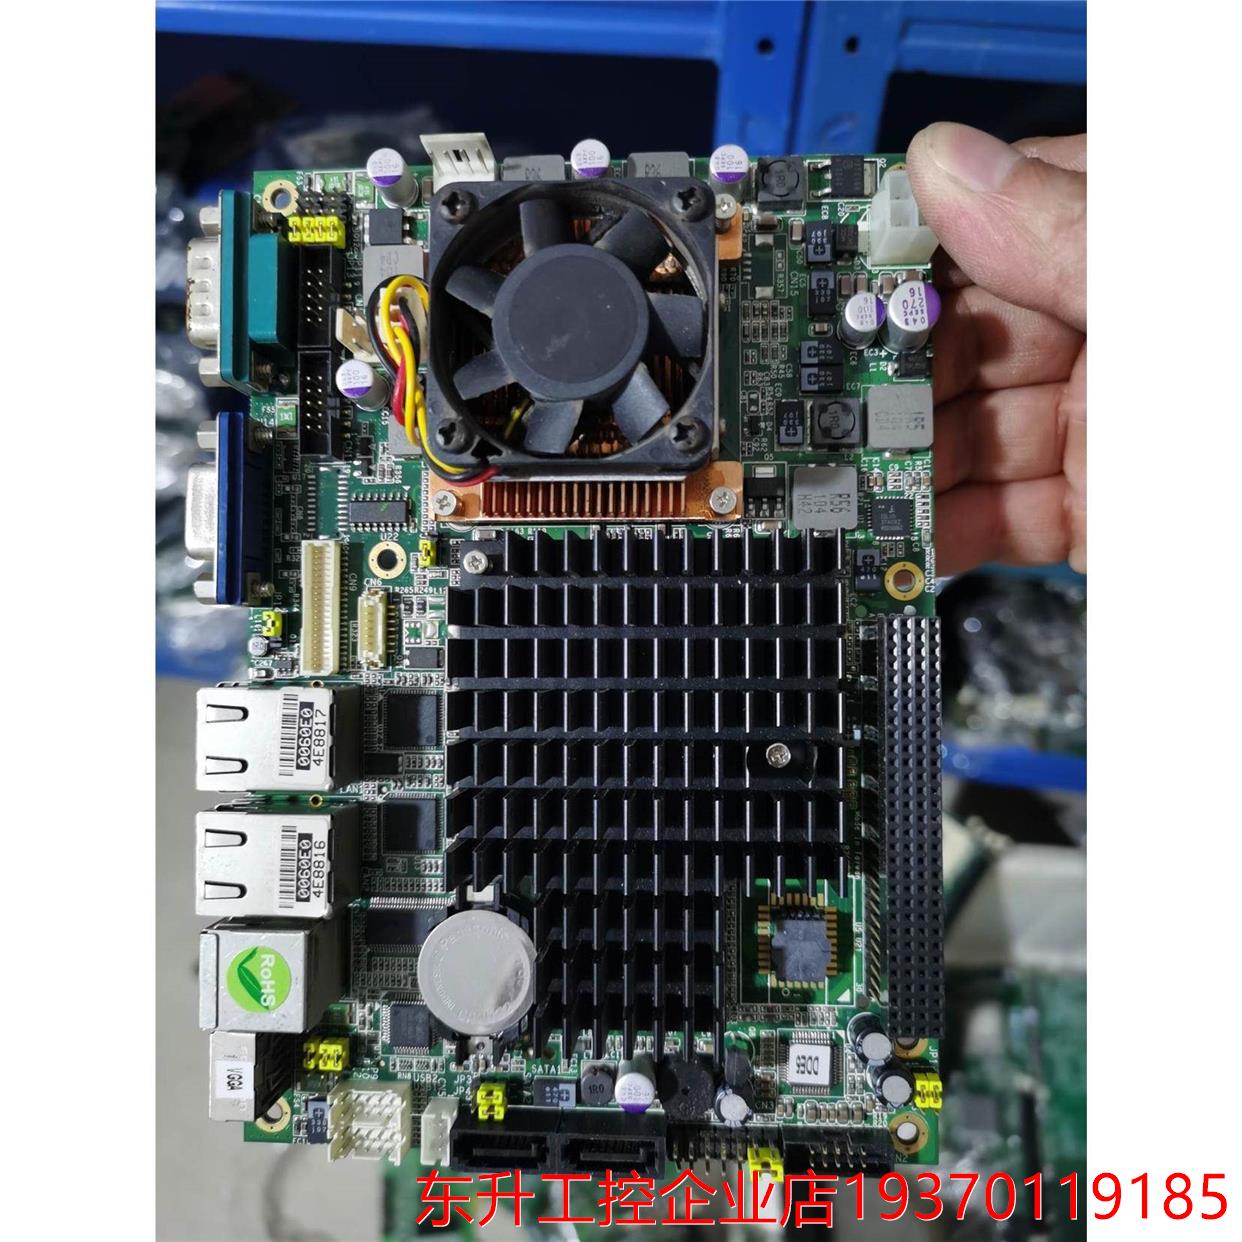 艾讯 EP850 REV:A4-RC 工控主板 设备机主板 电子元器件市场 连接器 原图主图